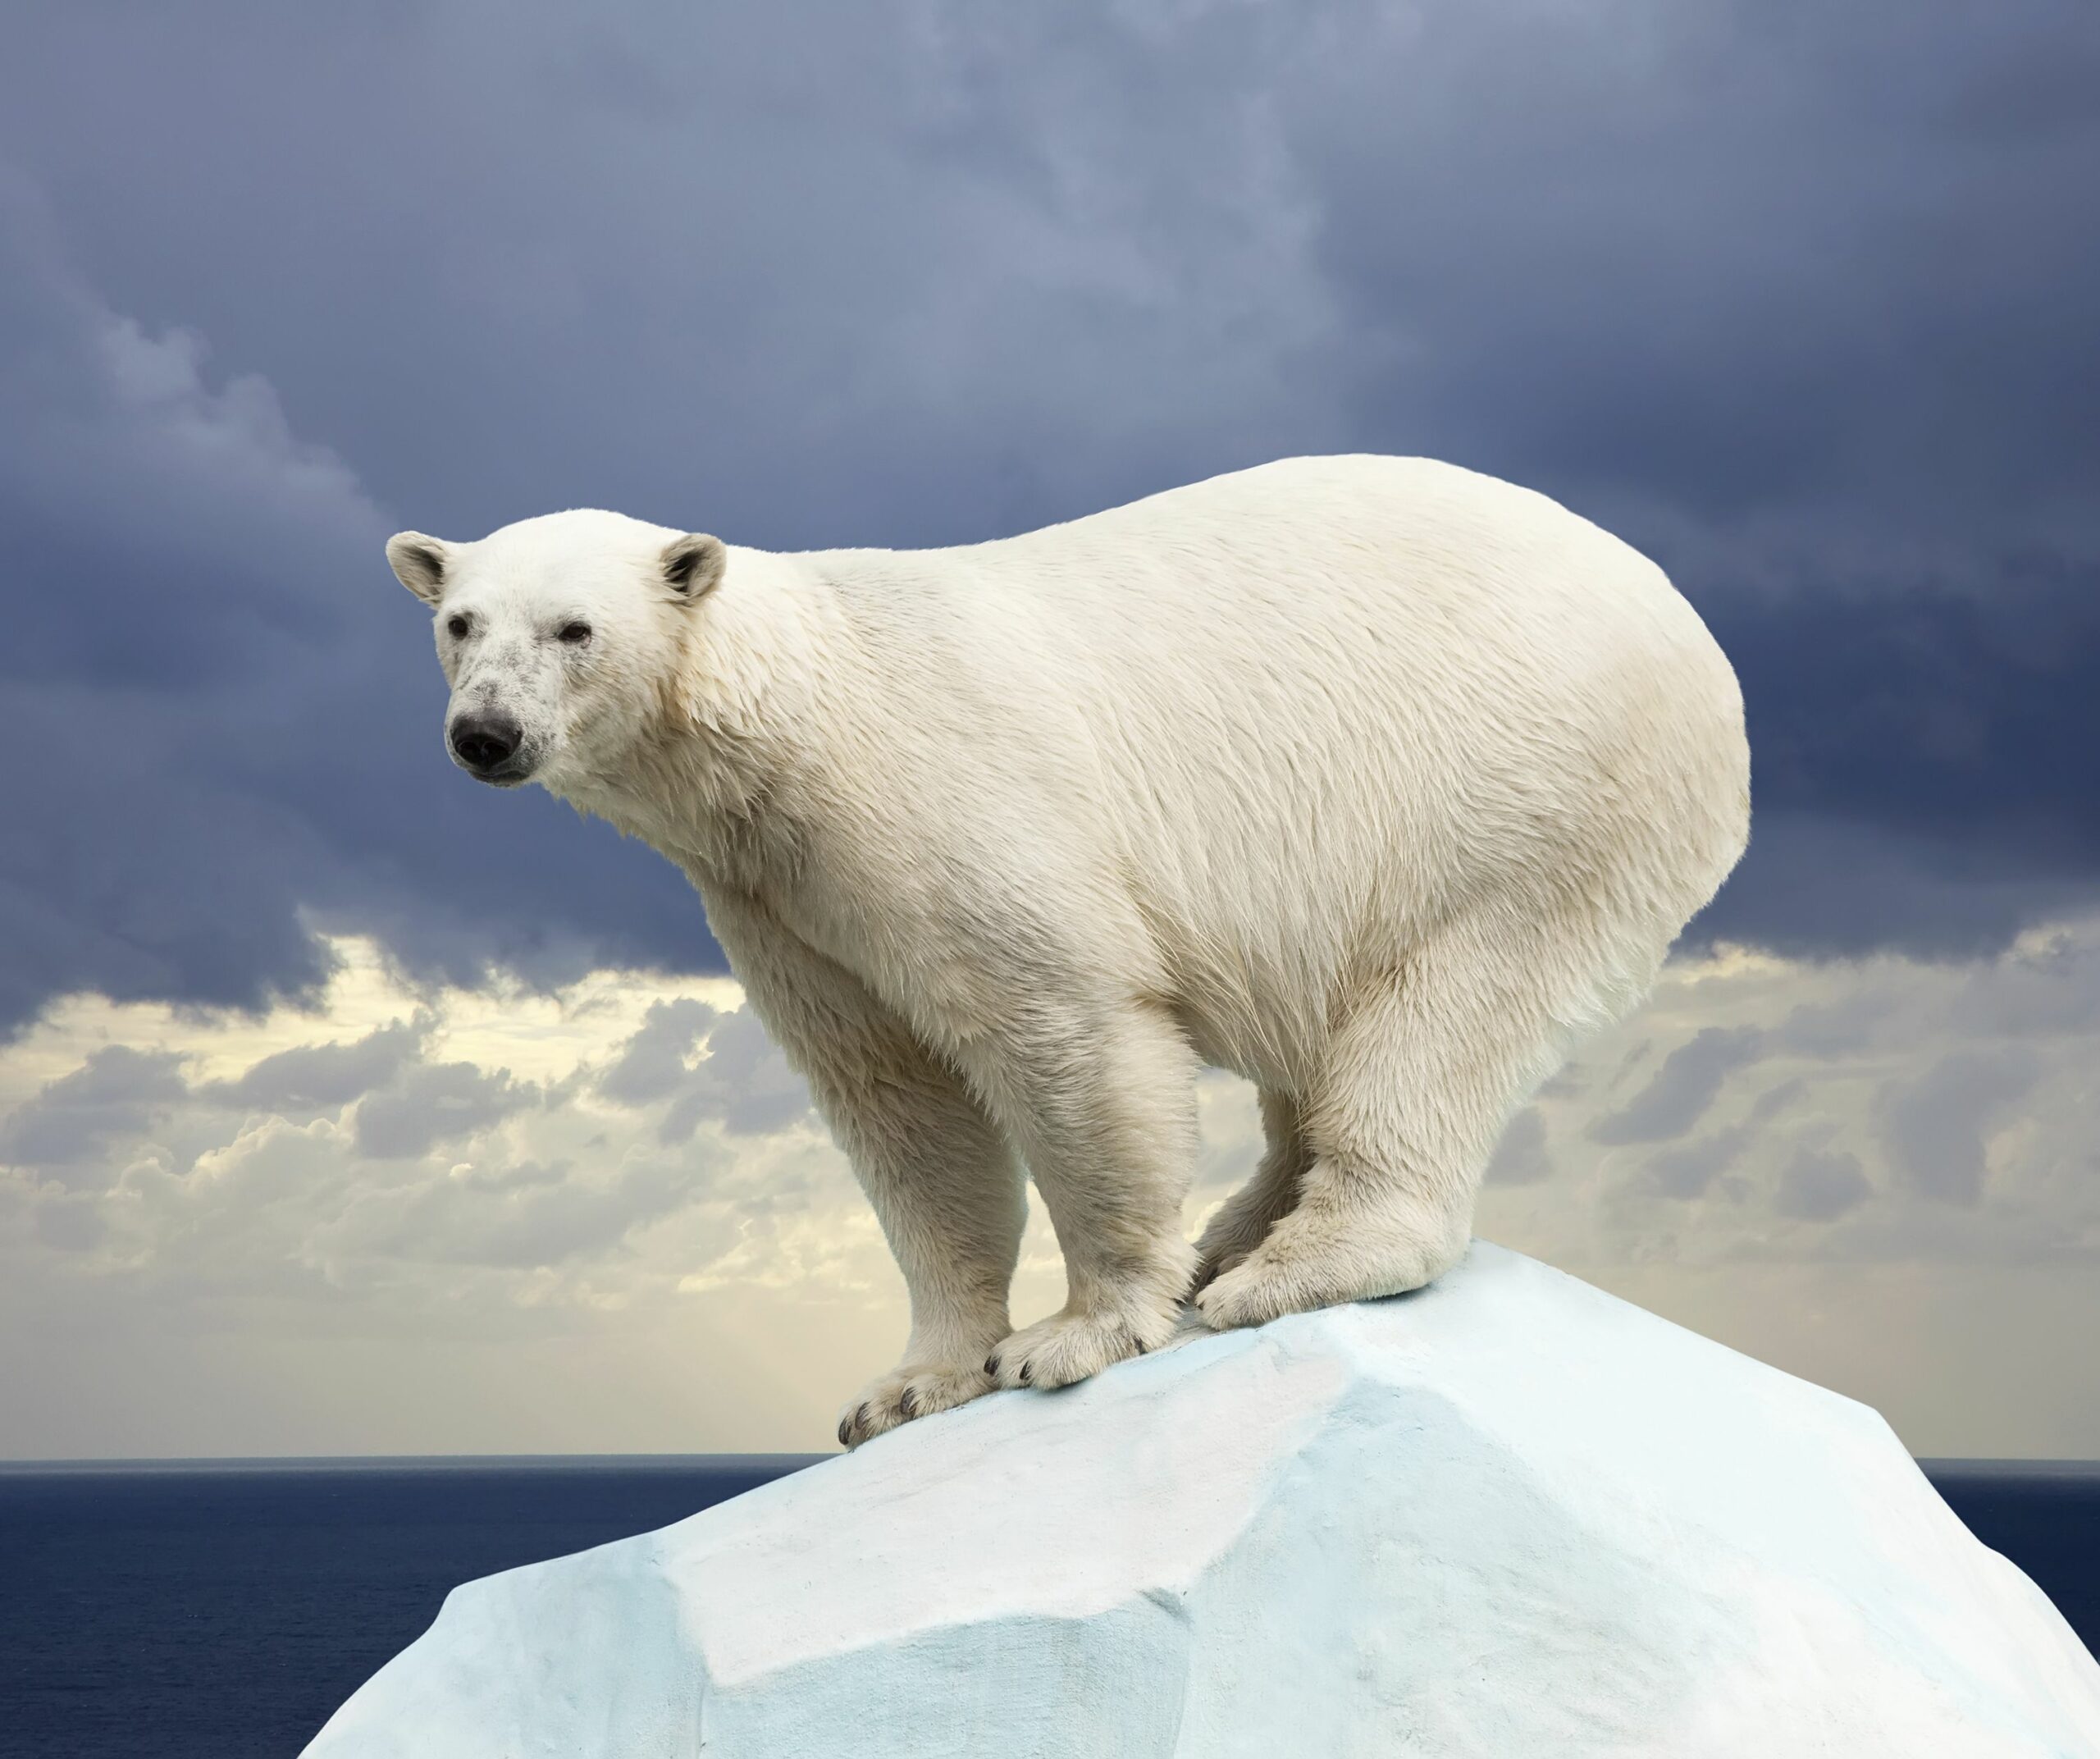  ‣ adn24 tutto quello che (forse) non sai sull’orso polare